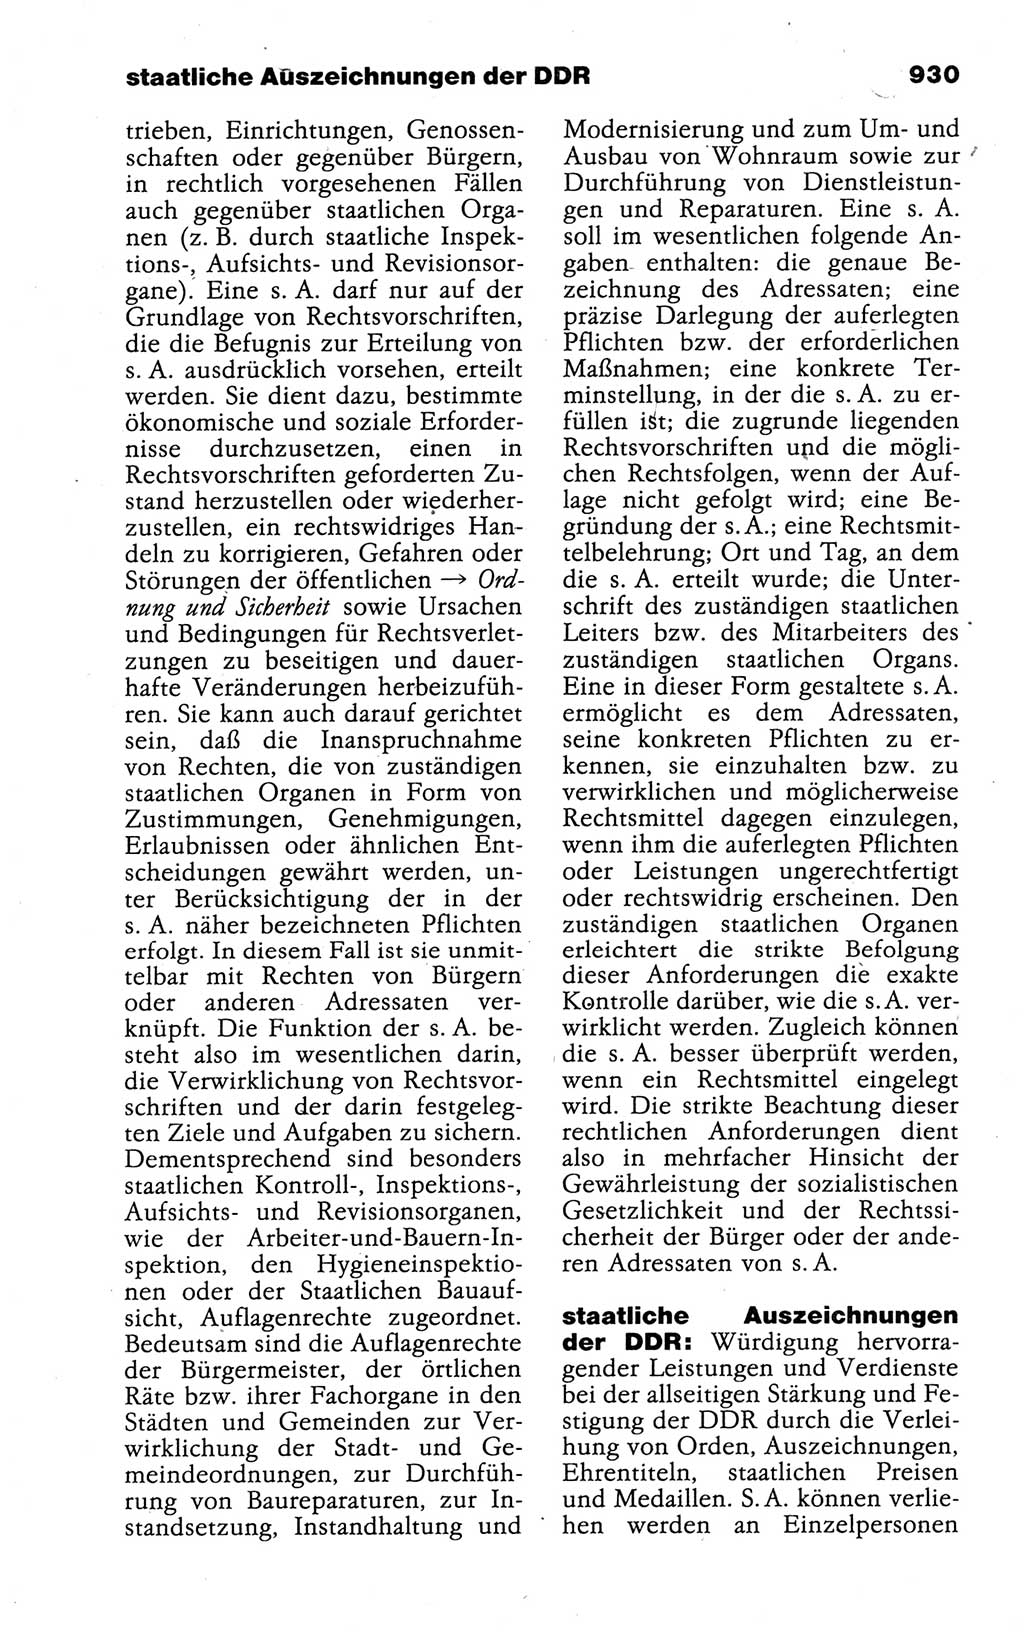 Kleines politisches Wörterbuch [Deutsche Demokratische Republik (DDR)] 1988, Seite 930 (Kl. pol. Wb. DDR 1988, S. 930)